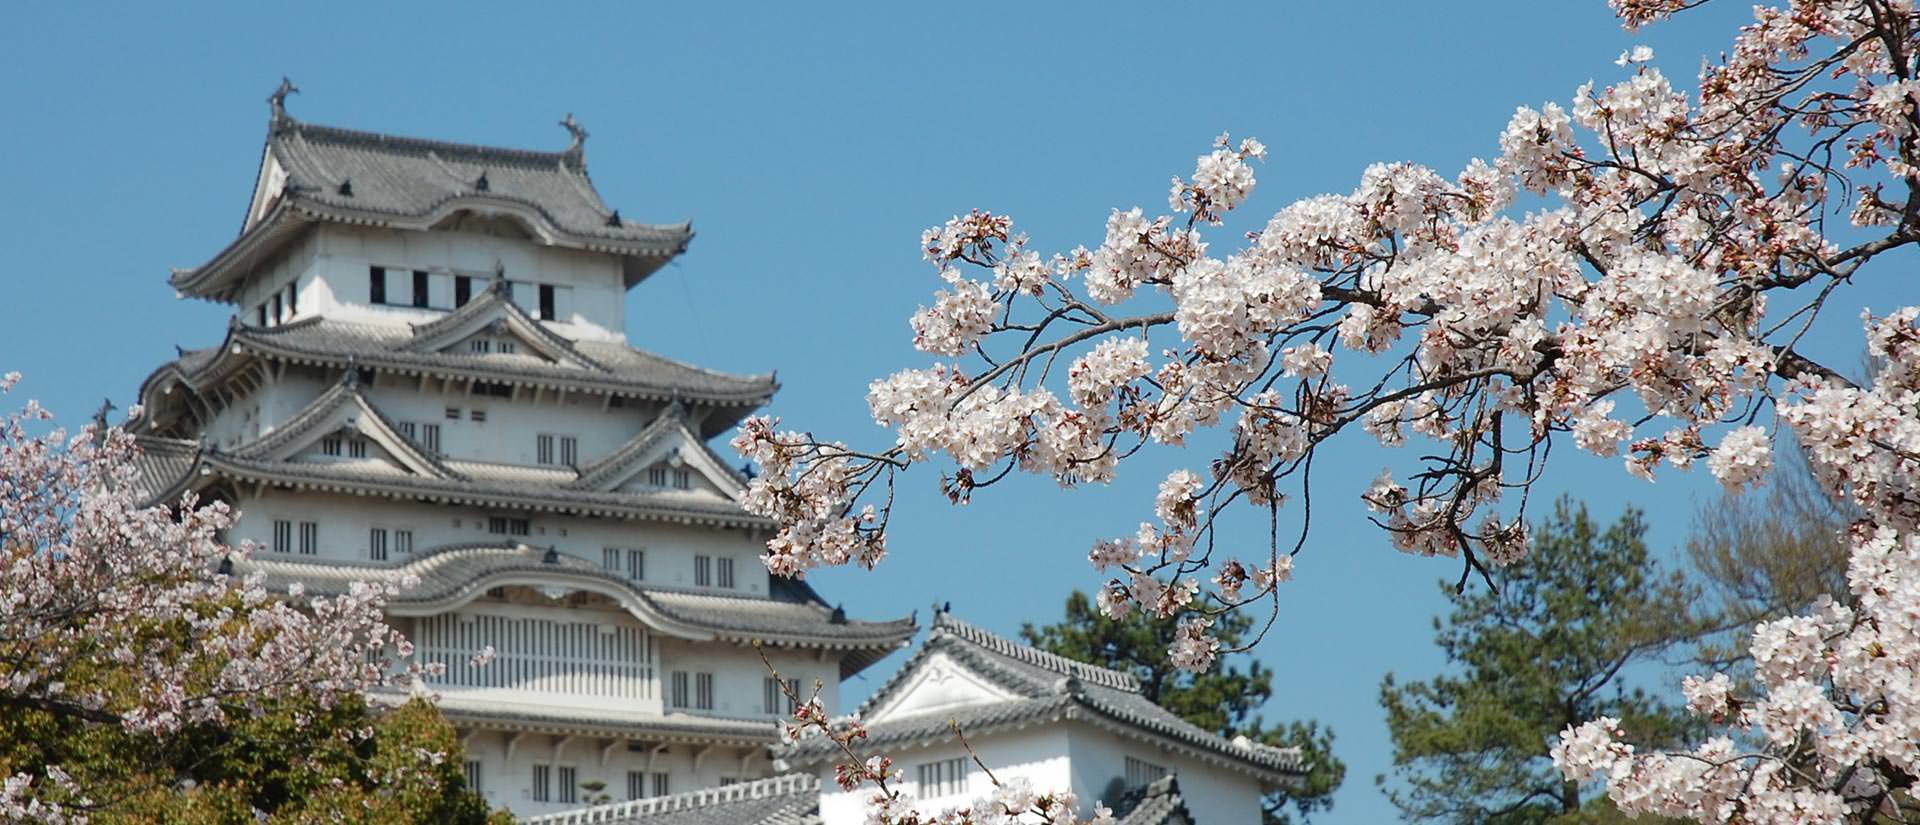 7 פסטיבלים שלא תרצו להחמיץ ביפן - פריחת הדובדבן